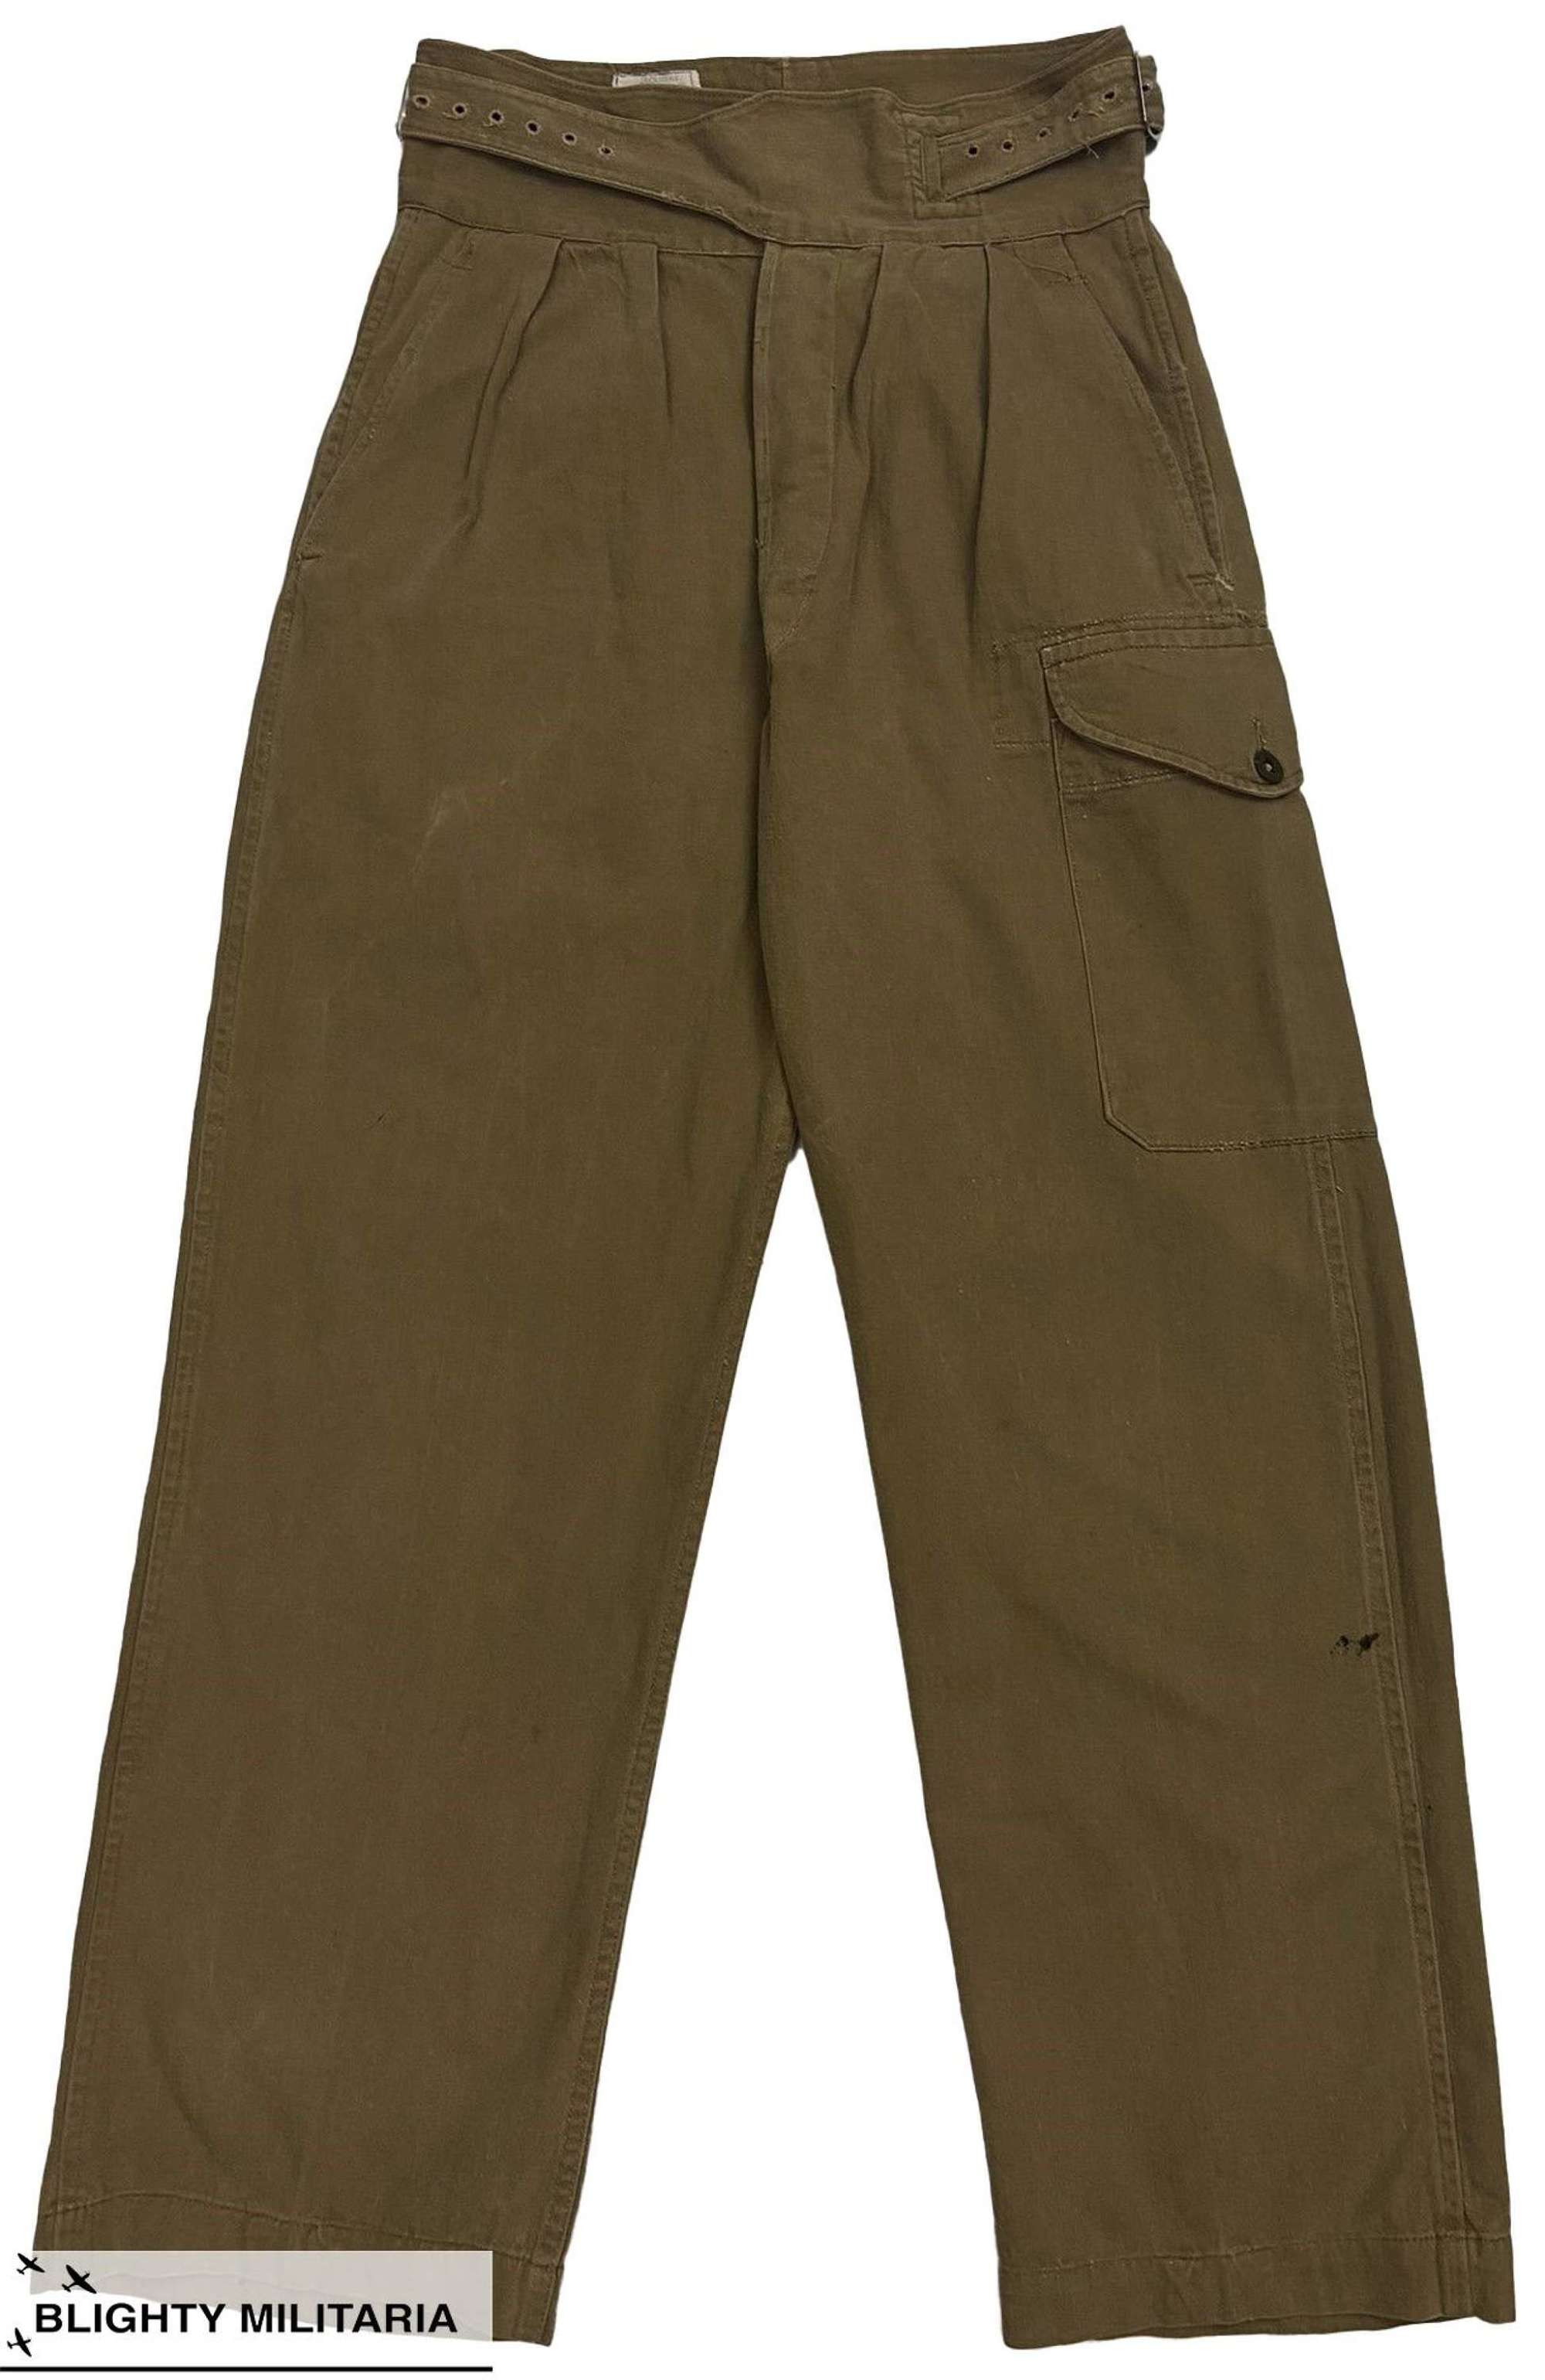 Original 1957 Dated British 1950 Pattern Khaki Drill Trousers - Size 5